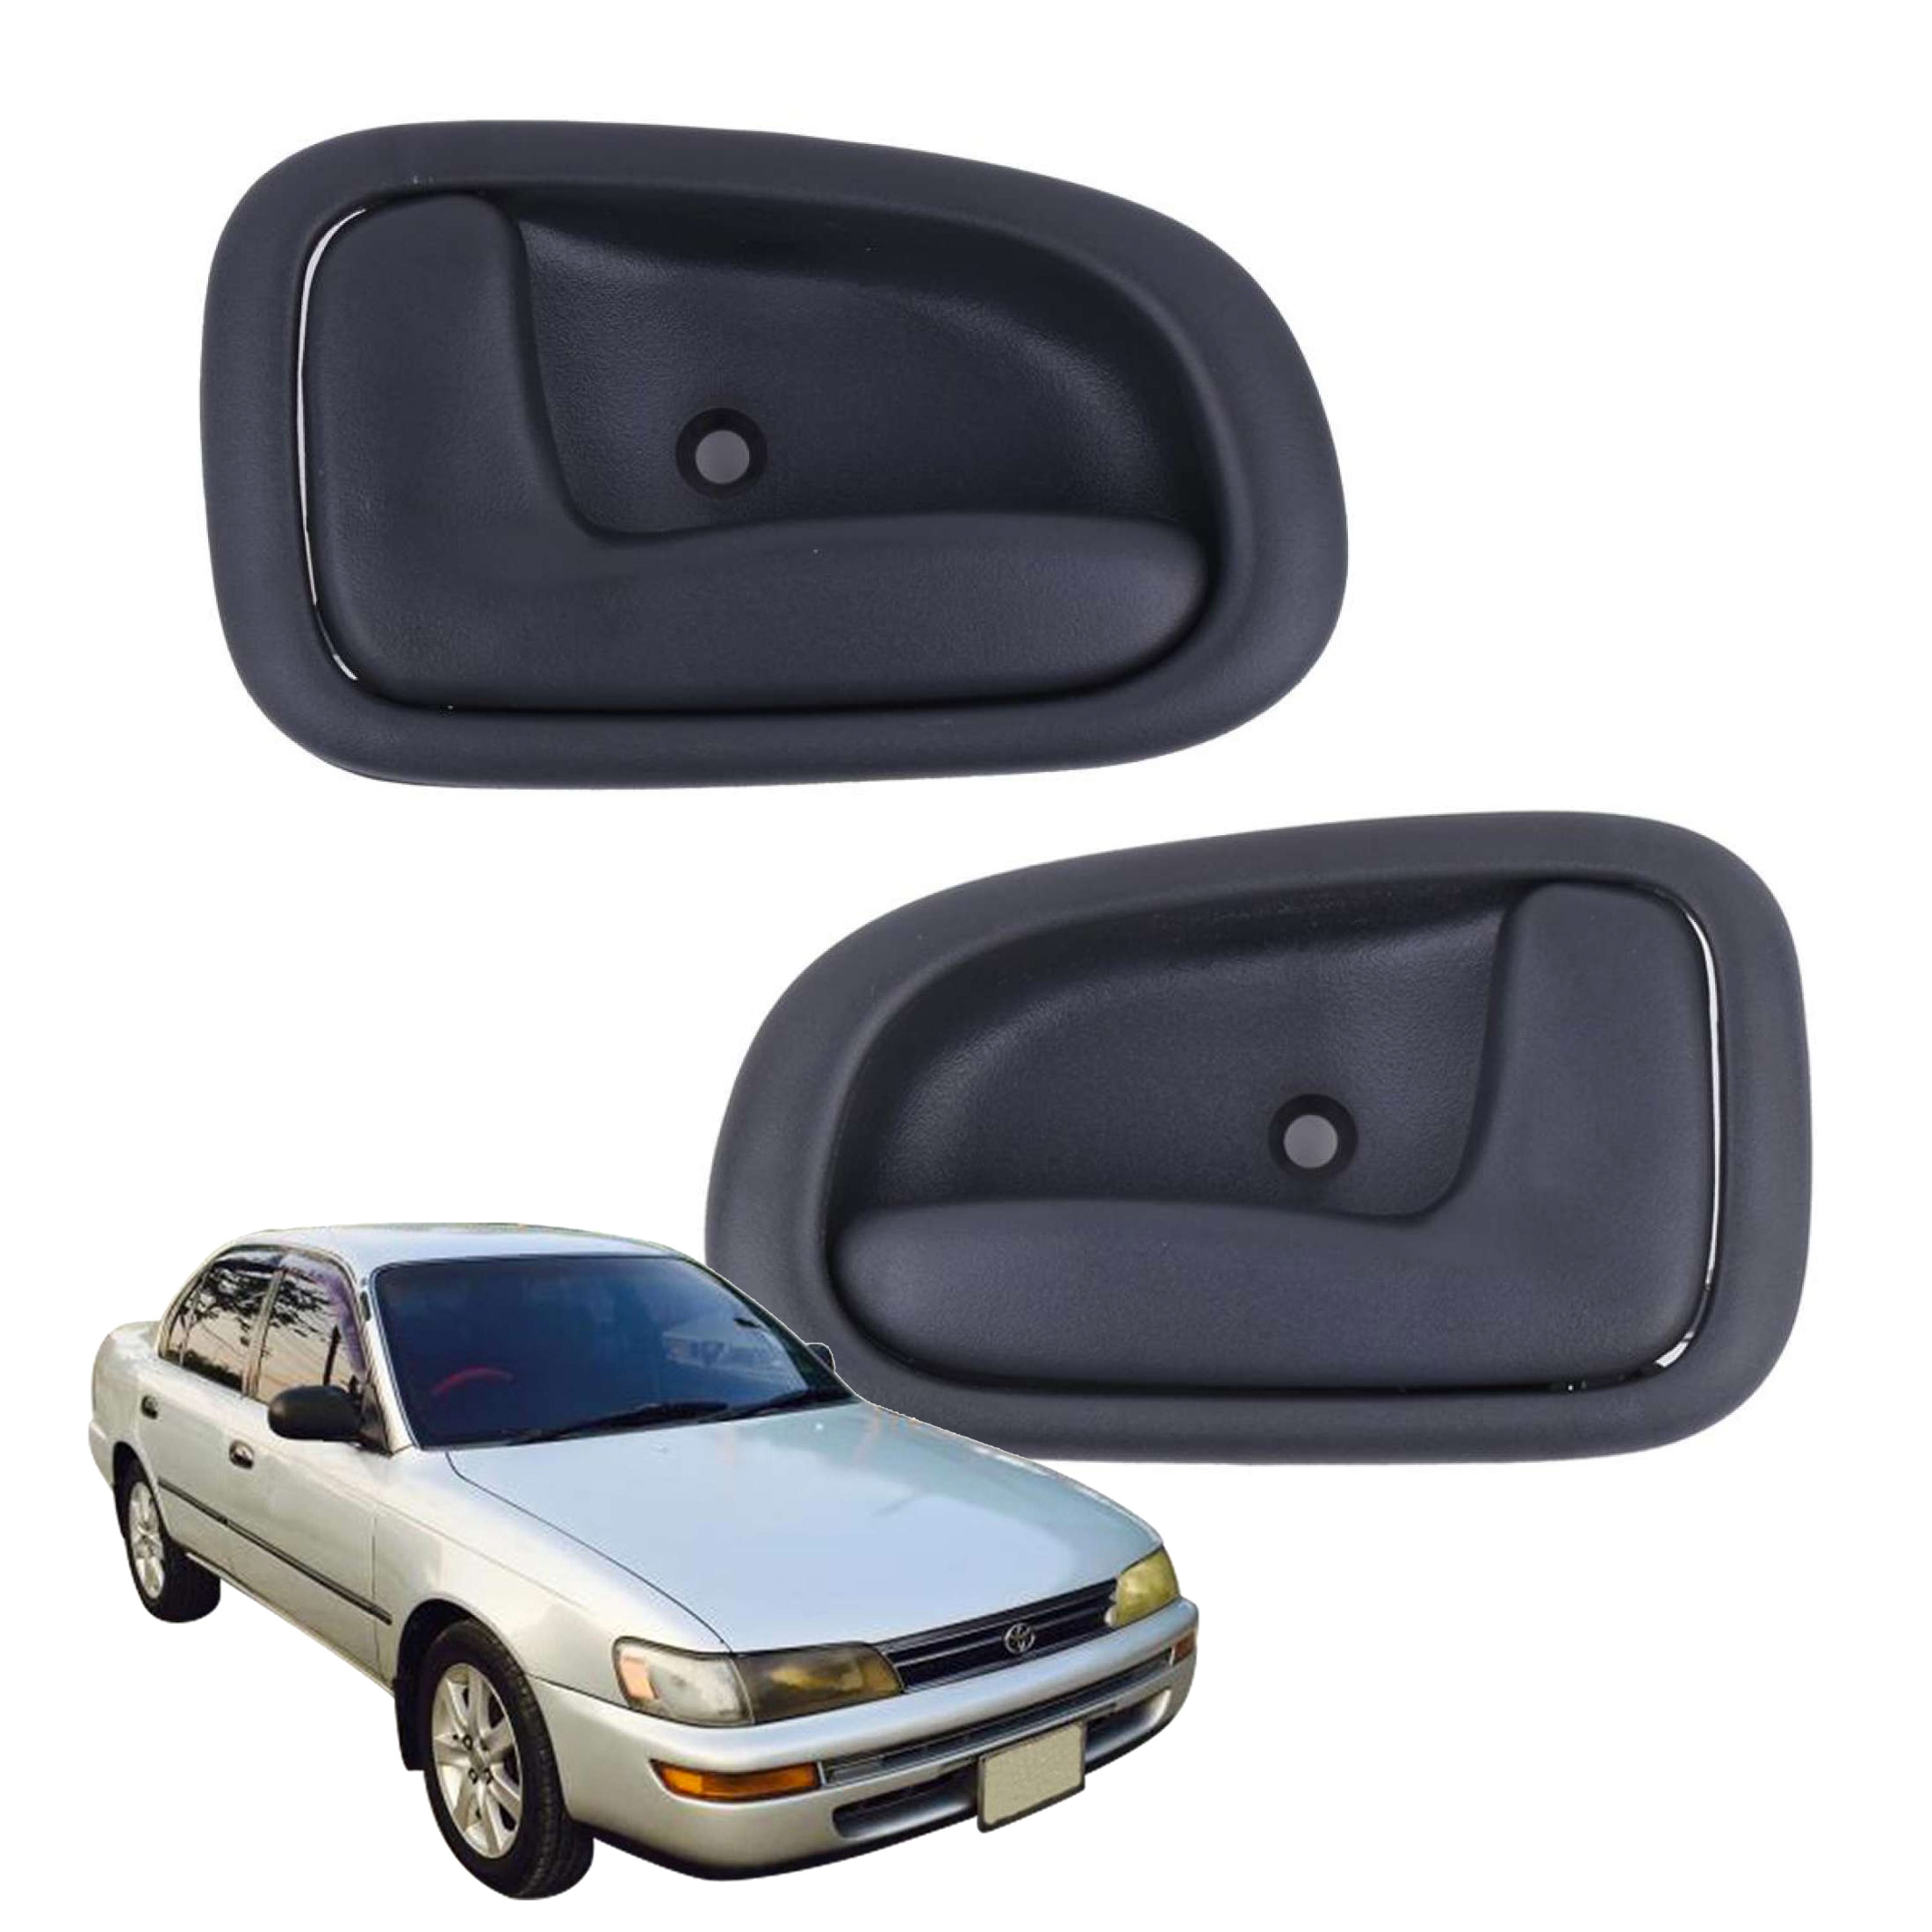 [[ส่งฟรี]]A56 มือเปิดใน มือเปิดประตู สำหรับ Toyota Corolla AE100 โตโยต้า โคโรล่า เออี100 ปี 1991-1997 (1คู่) ข้างซ้าย ช้างขวา